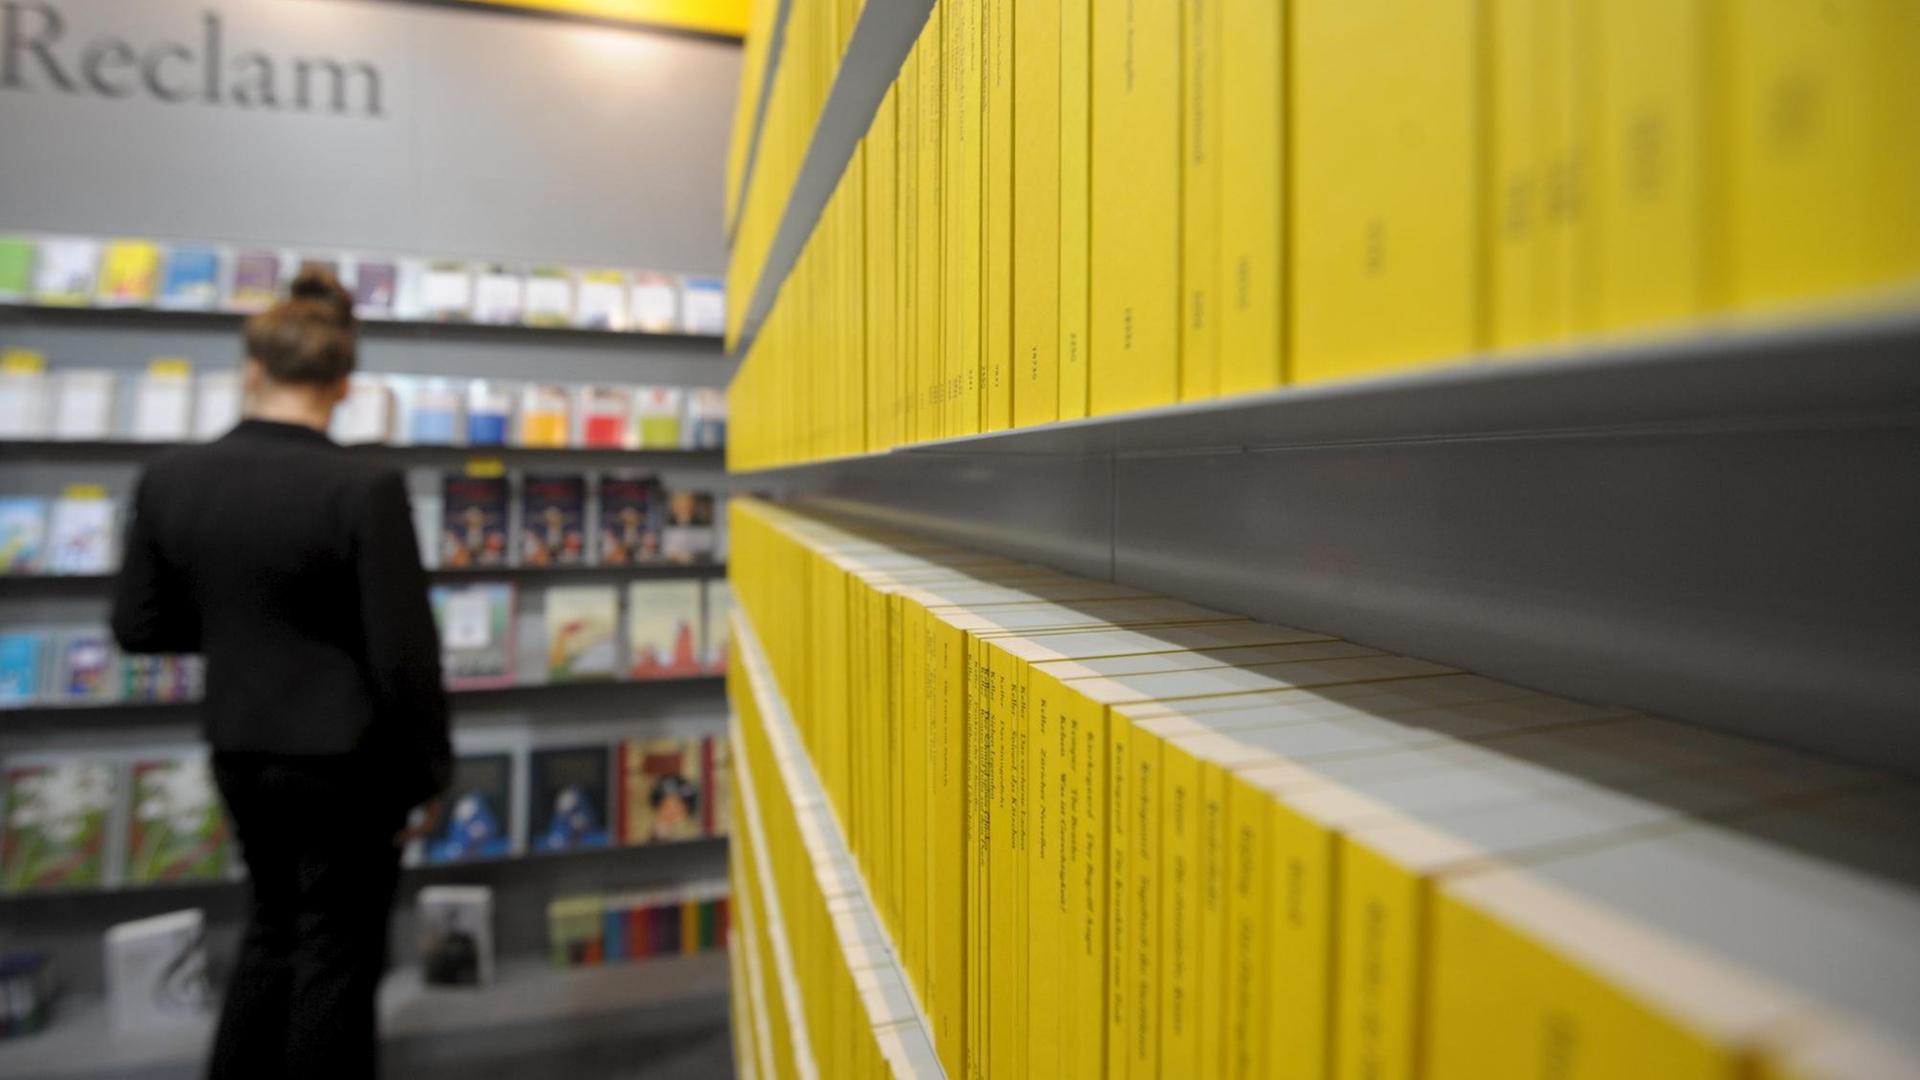 Der Reclam-Verlag auf der Buchmesse Leipzig 2011